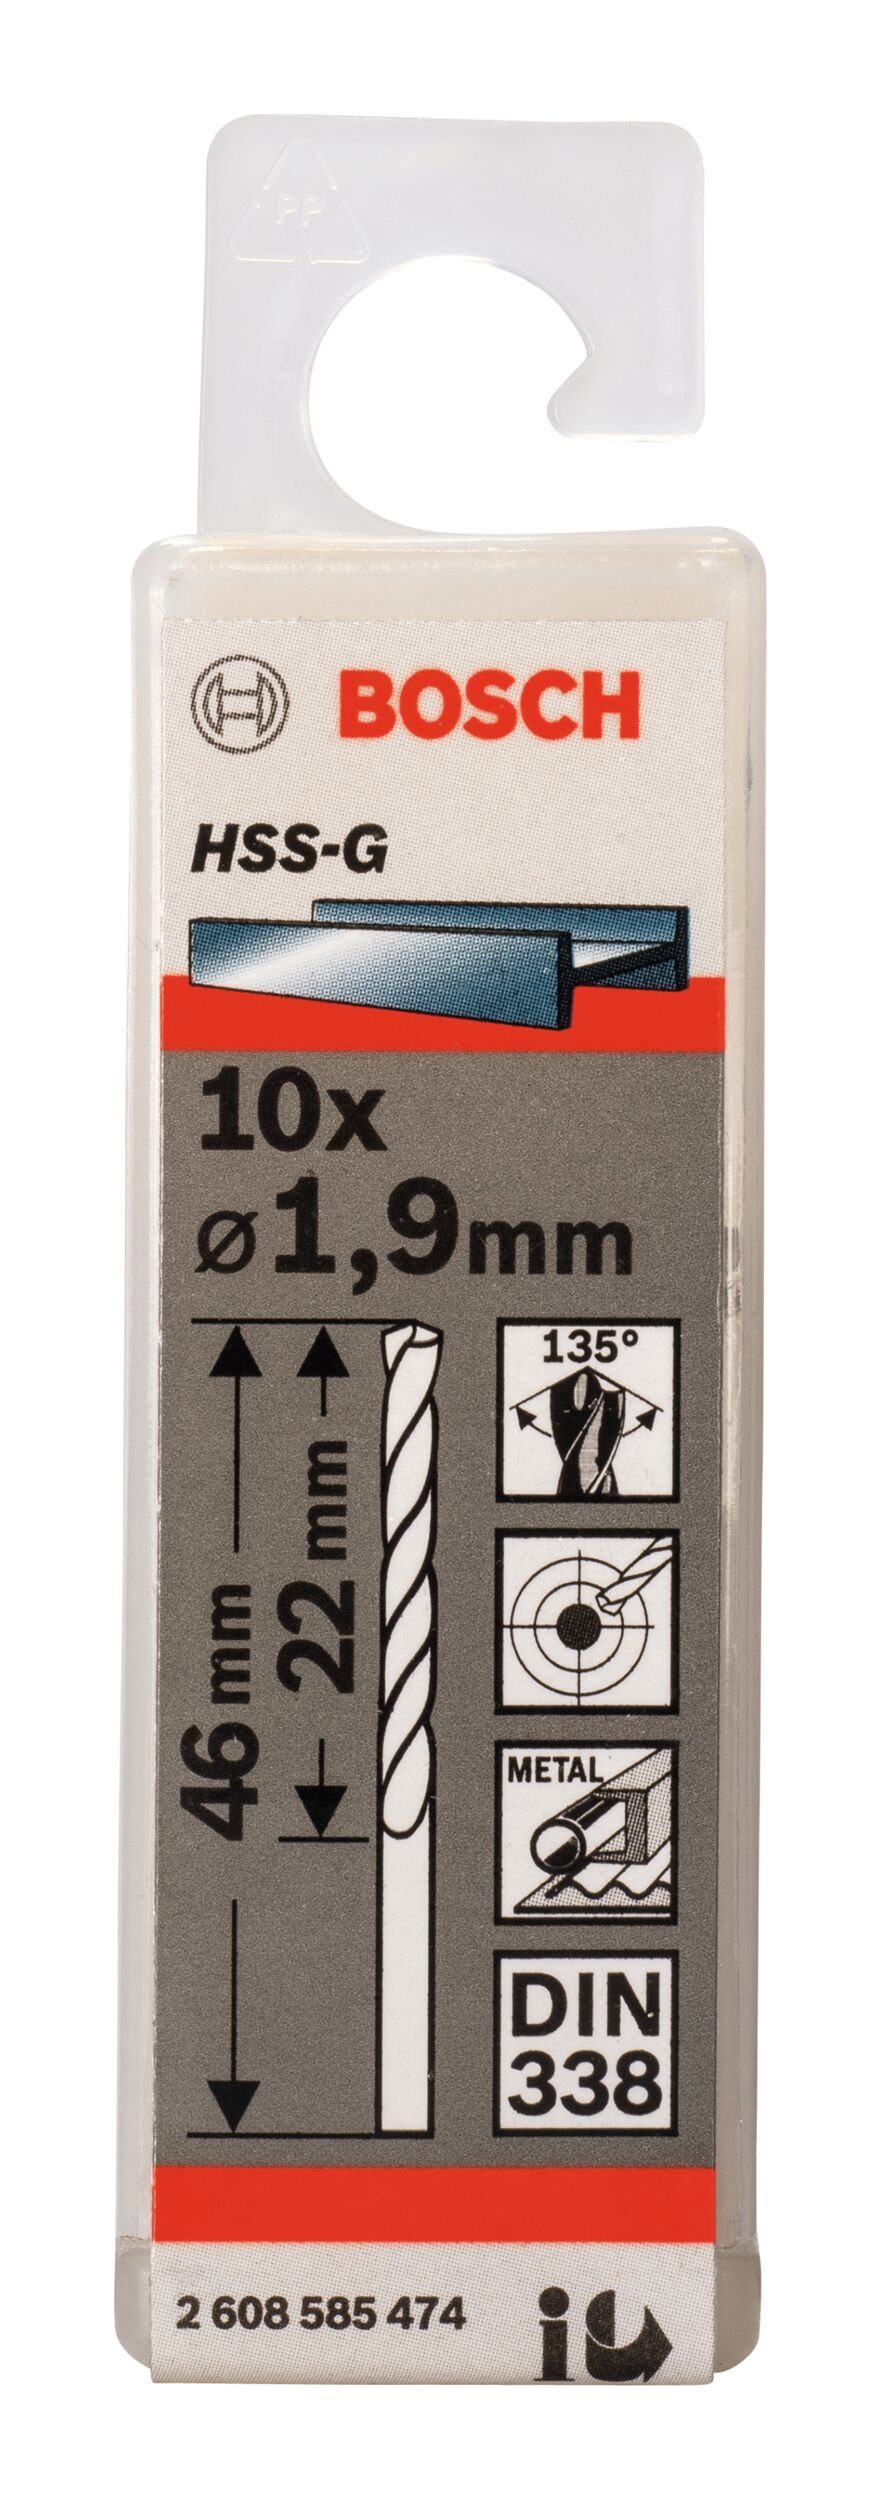 (10 1,9 - - HSS-G 22 338) x BOSCH Metallbohrer, mm (DIN Stück), 10er-Pack x 46